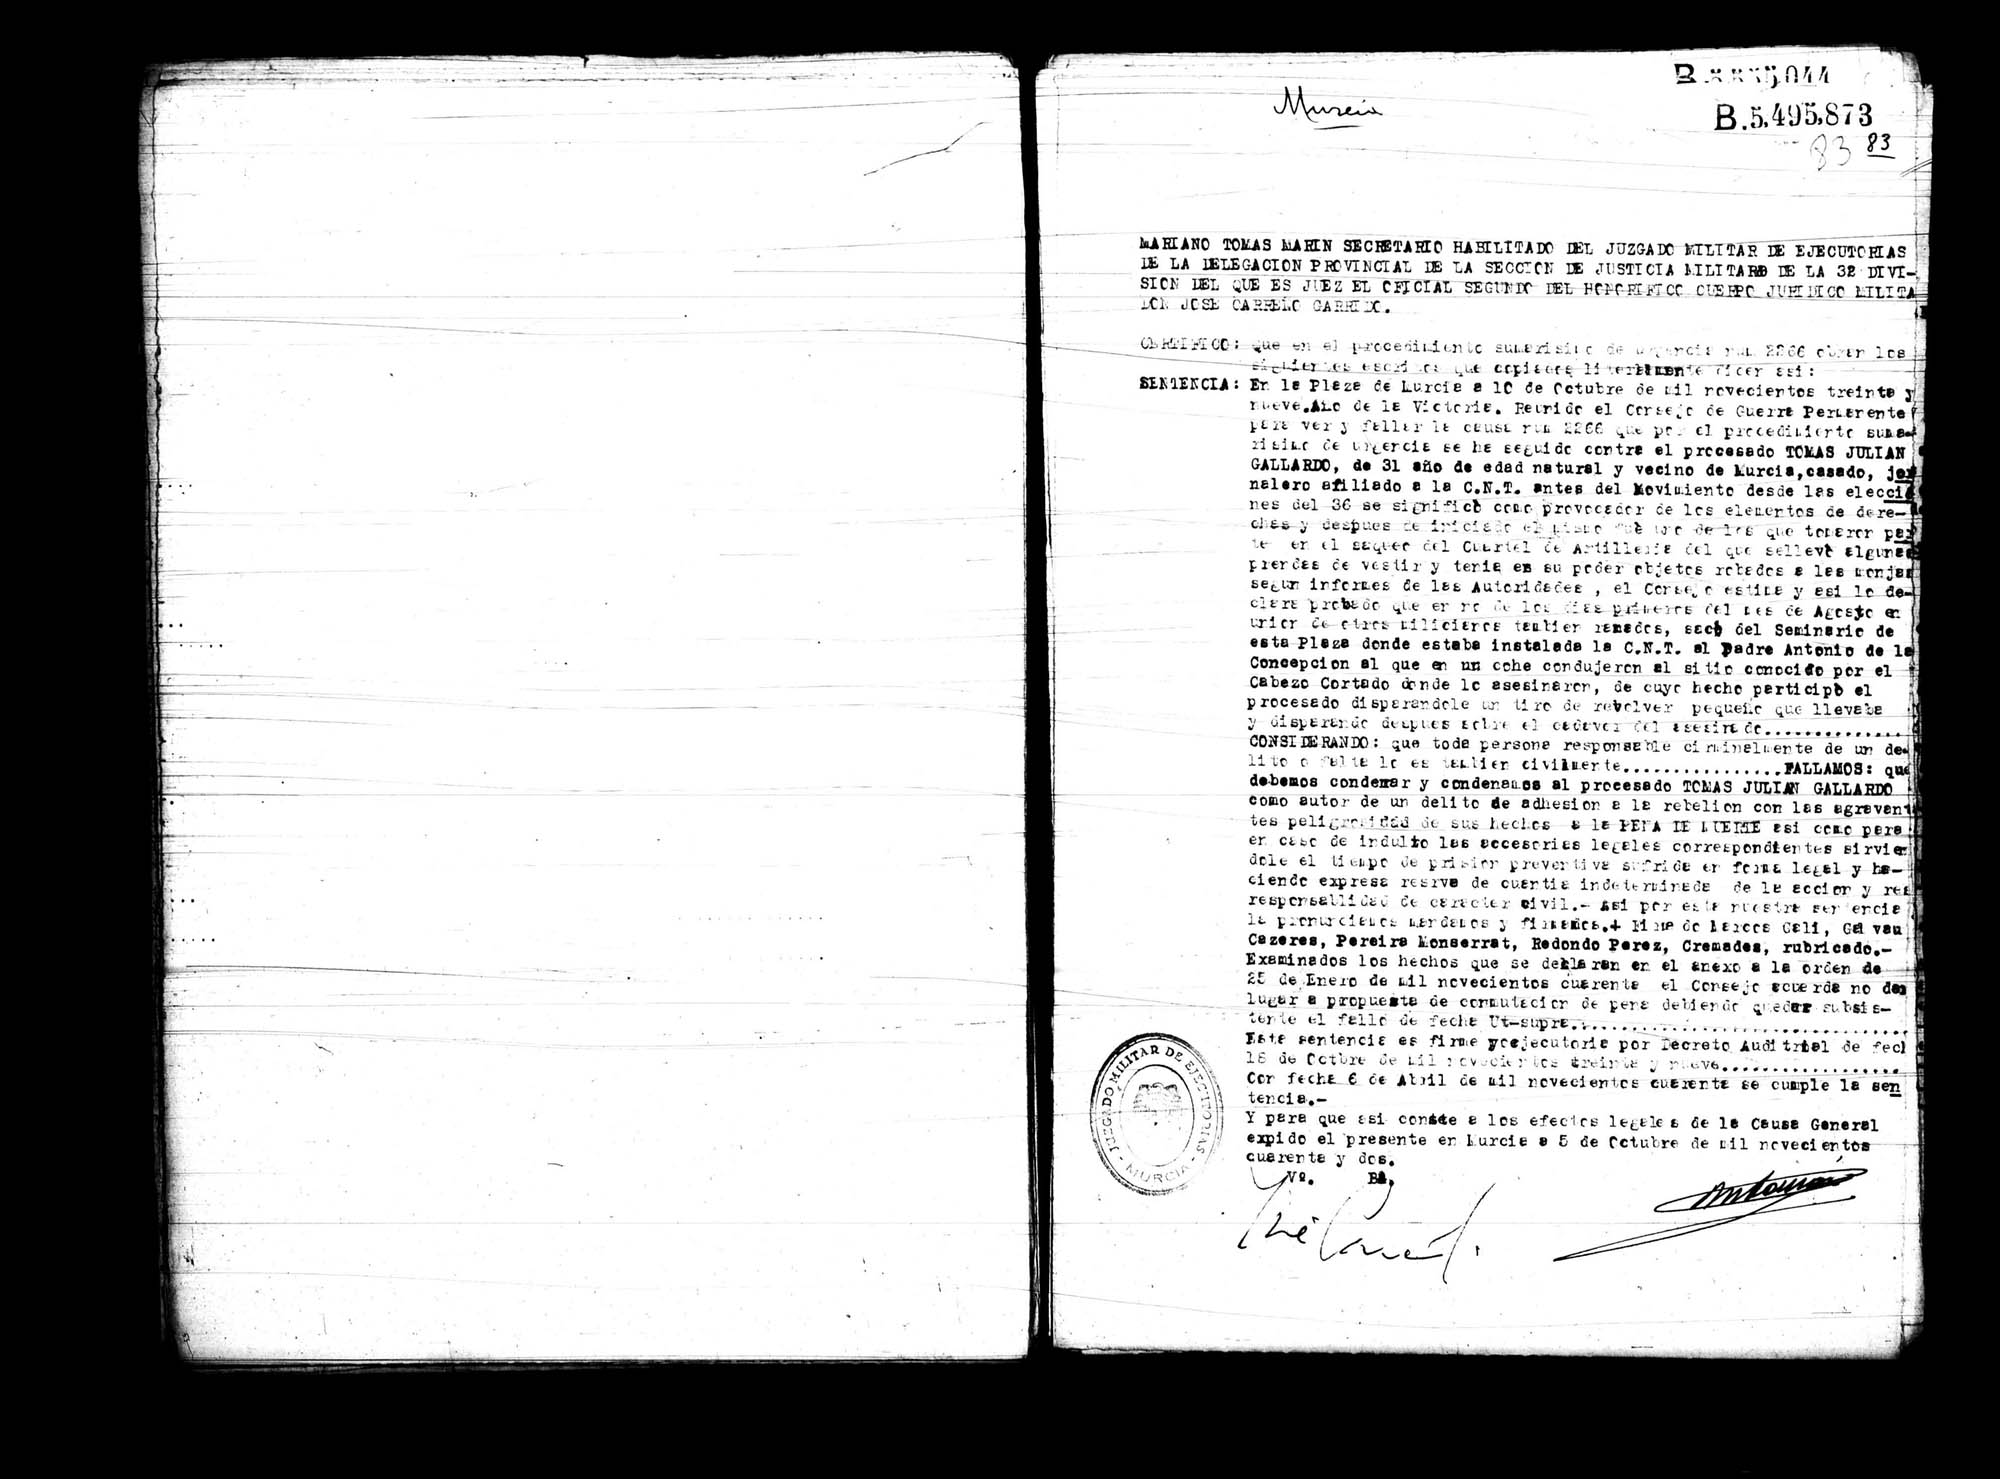 Certificado de la sentencia pronunciada contra Tomás Julián Gallardo, causa  2266, el 10 de octubre de 1939 en Murcia.